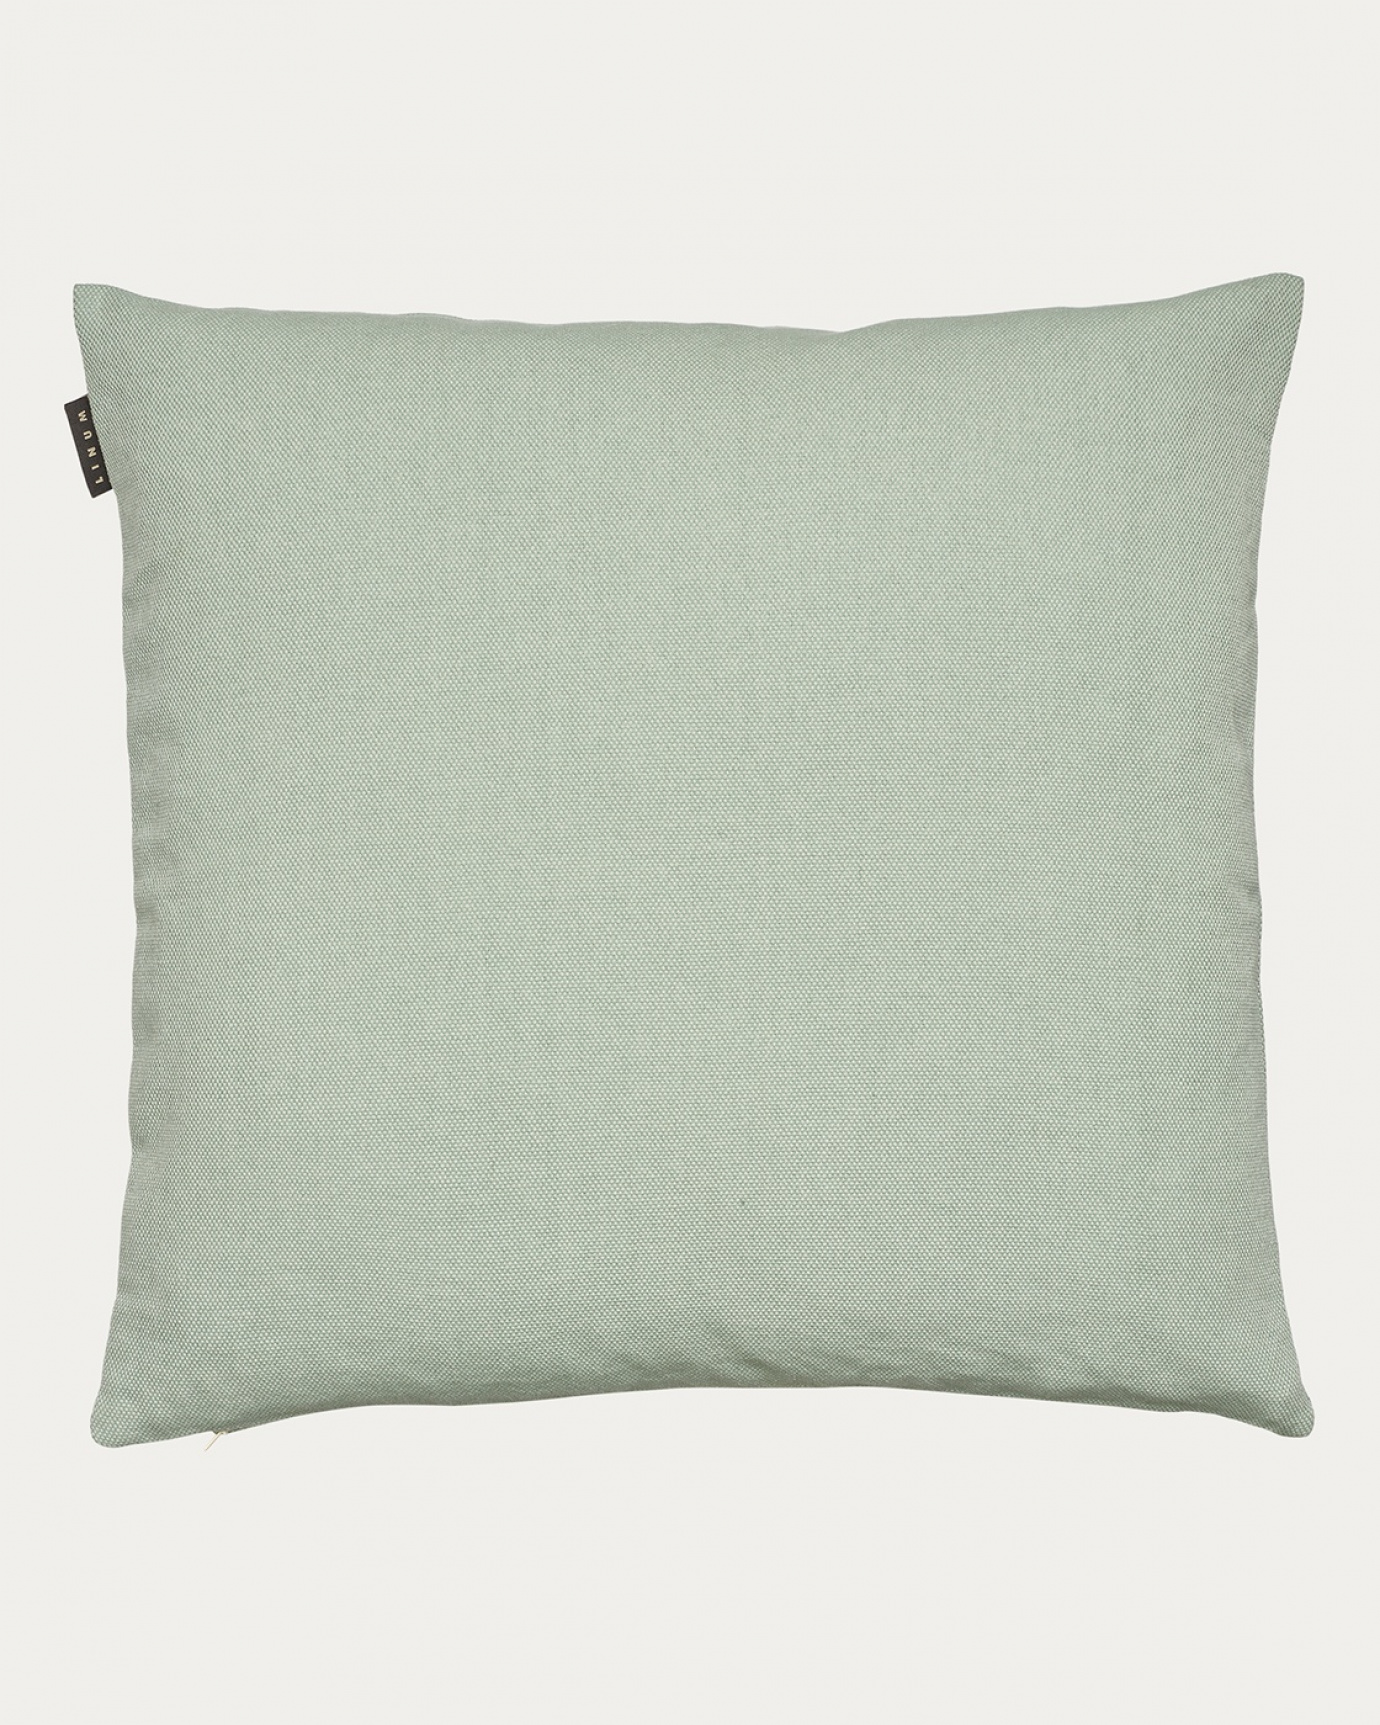 Produktbild helles eisgrün PEPPER Kissenhülle aus weicher Baumwolle von LINUM DESIGN. Einfach zu waschen und langlebig für Generationen. Größe 60x60 cm.